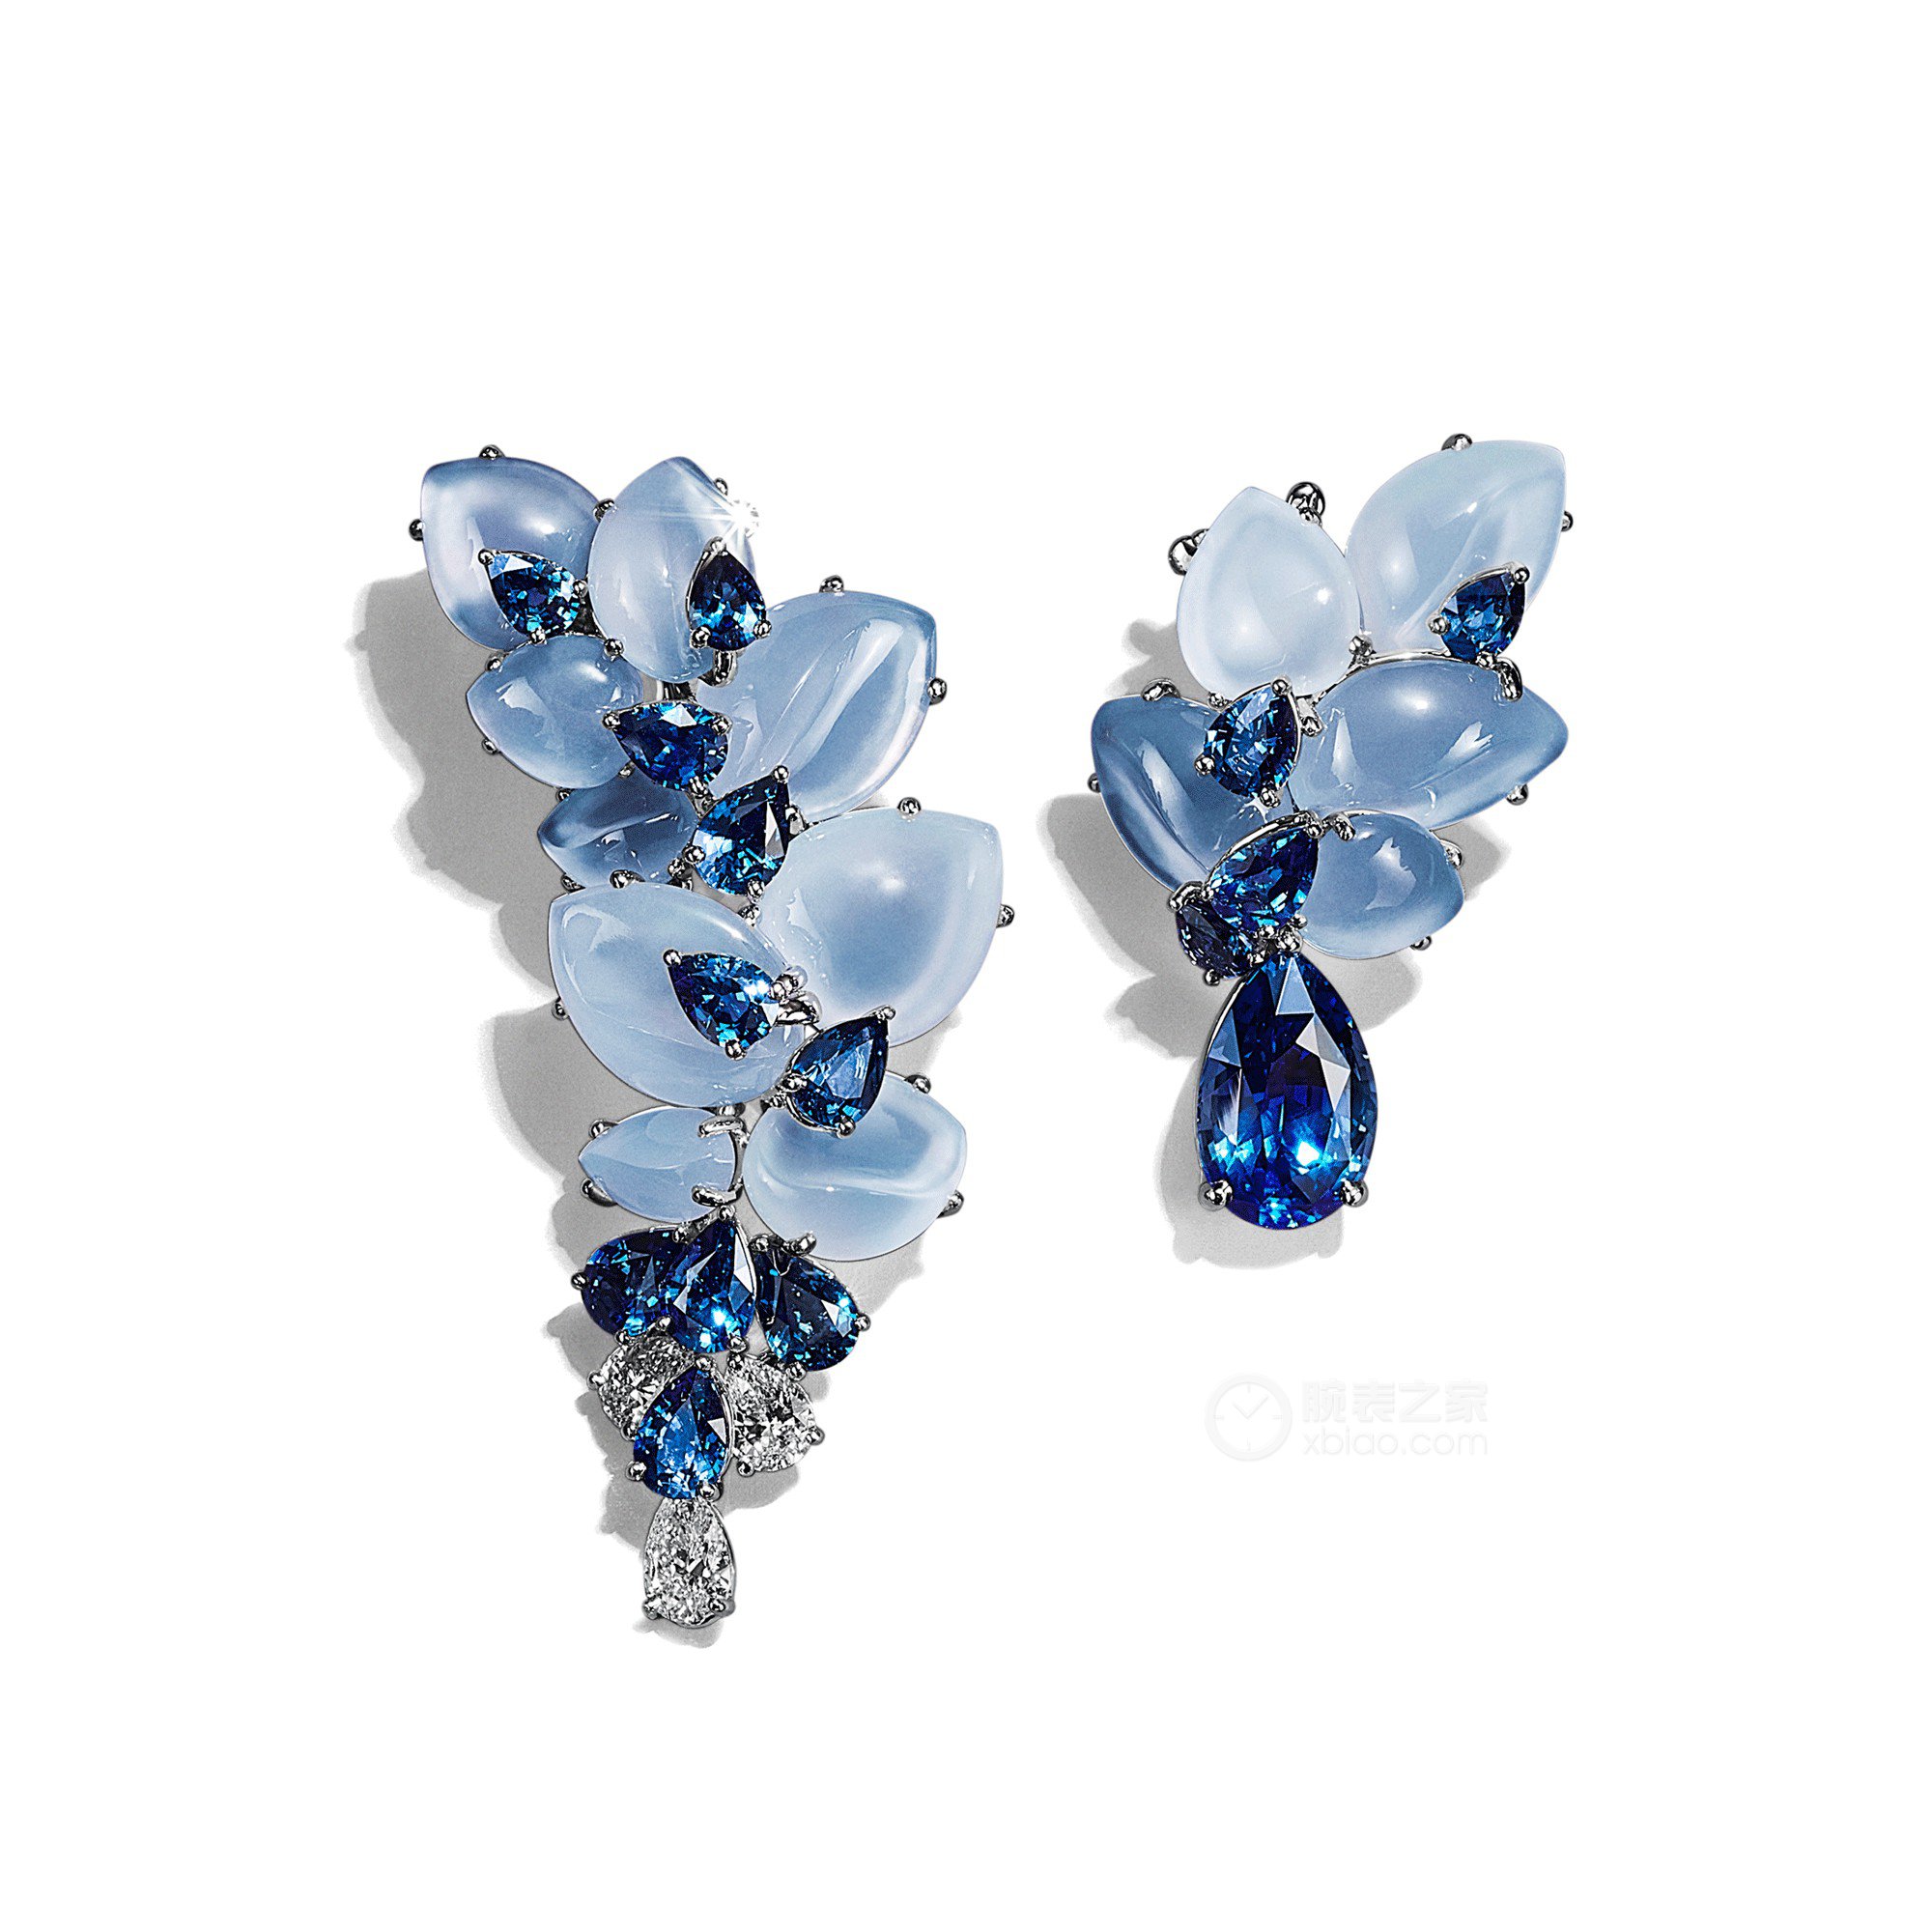 蒂芙尼BLUE BOOK高级珠宝铂金镶嵌未经优化处理蓝宝石，手工雕刻蓝玉髓与乳白色石英，蓝宝石及钻石耳环耳饰